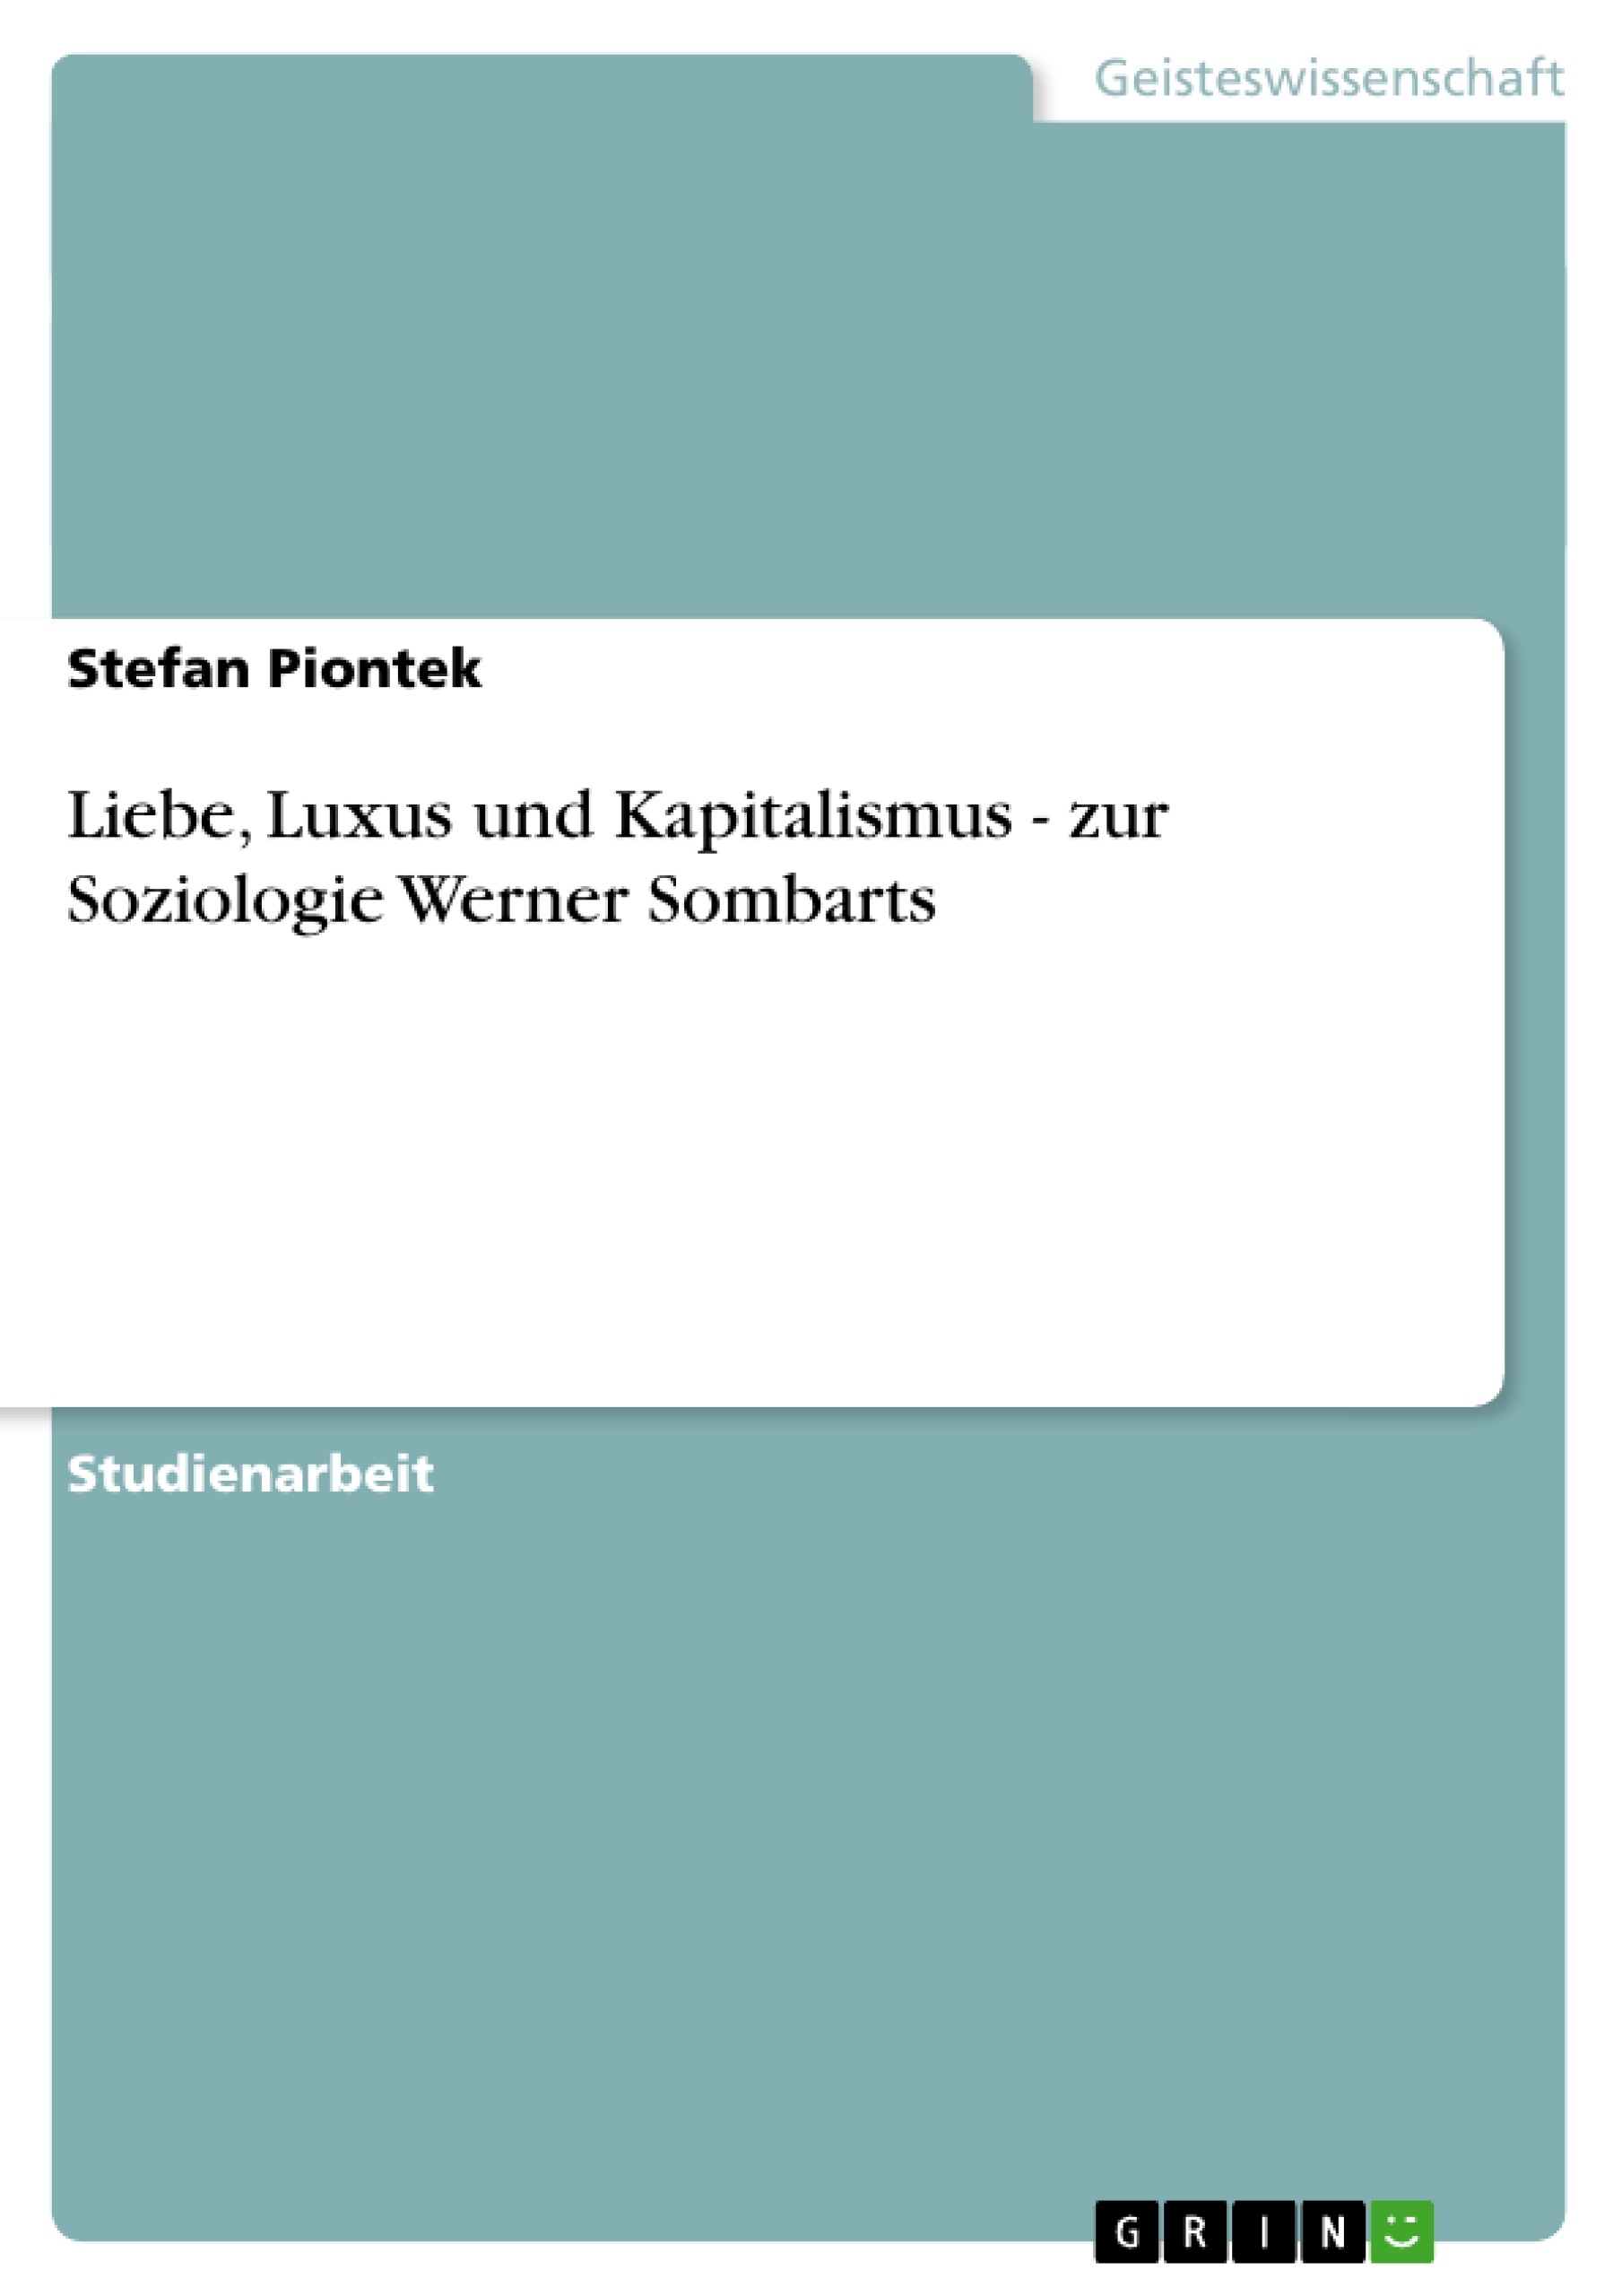 Title: Liebe, Luxus und Kapitalismus - zur Soziologie Werner Sombarts